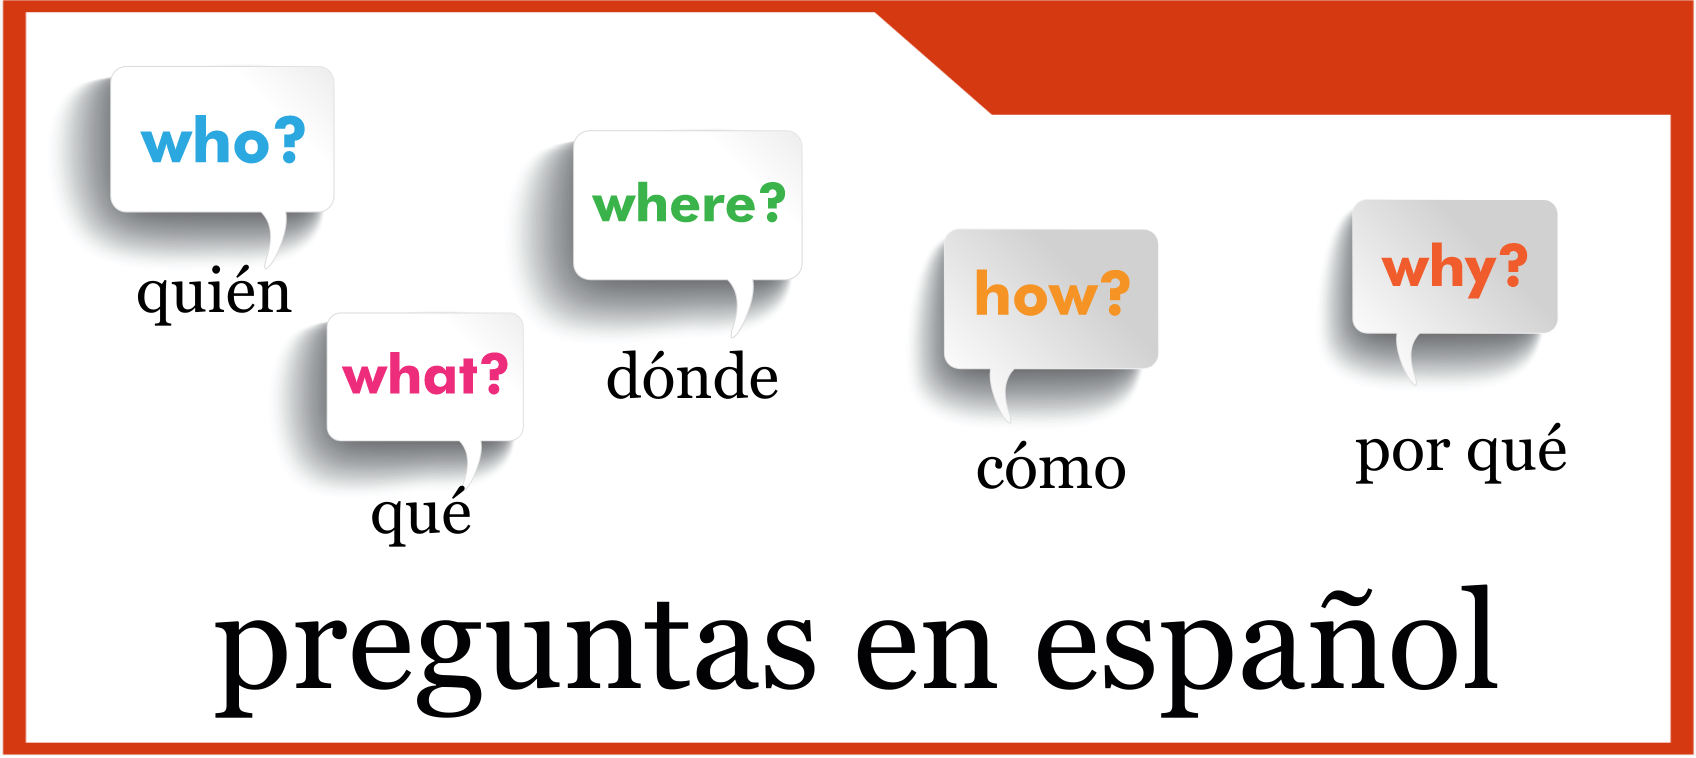 Preguntas en español.